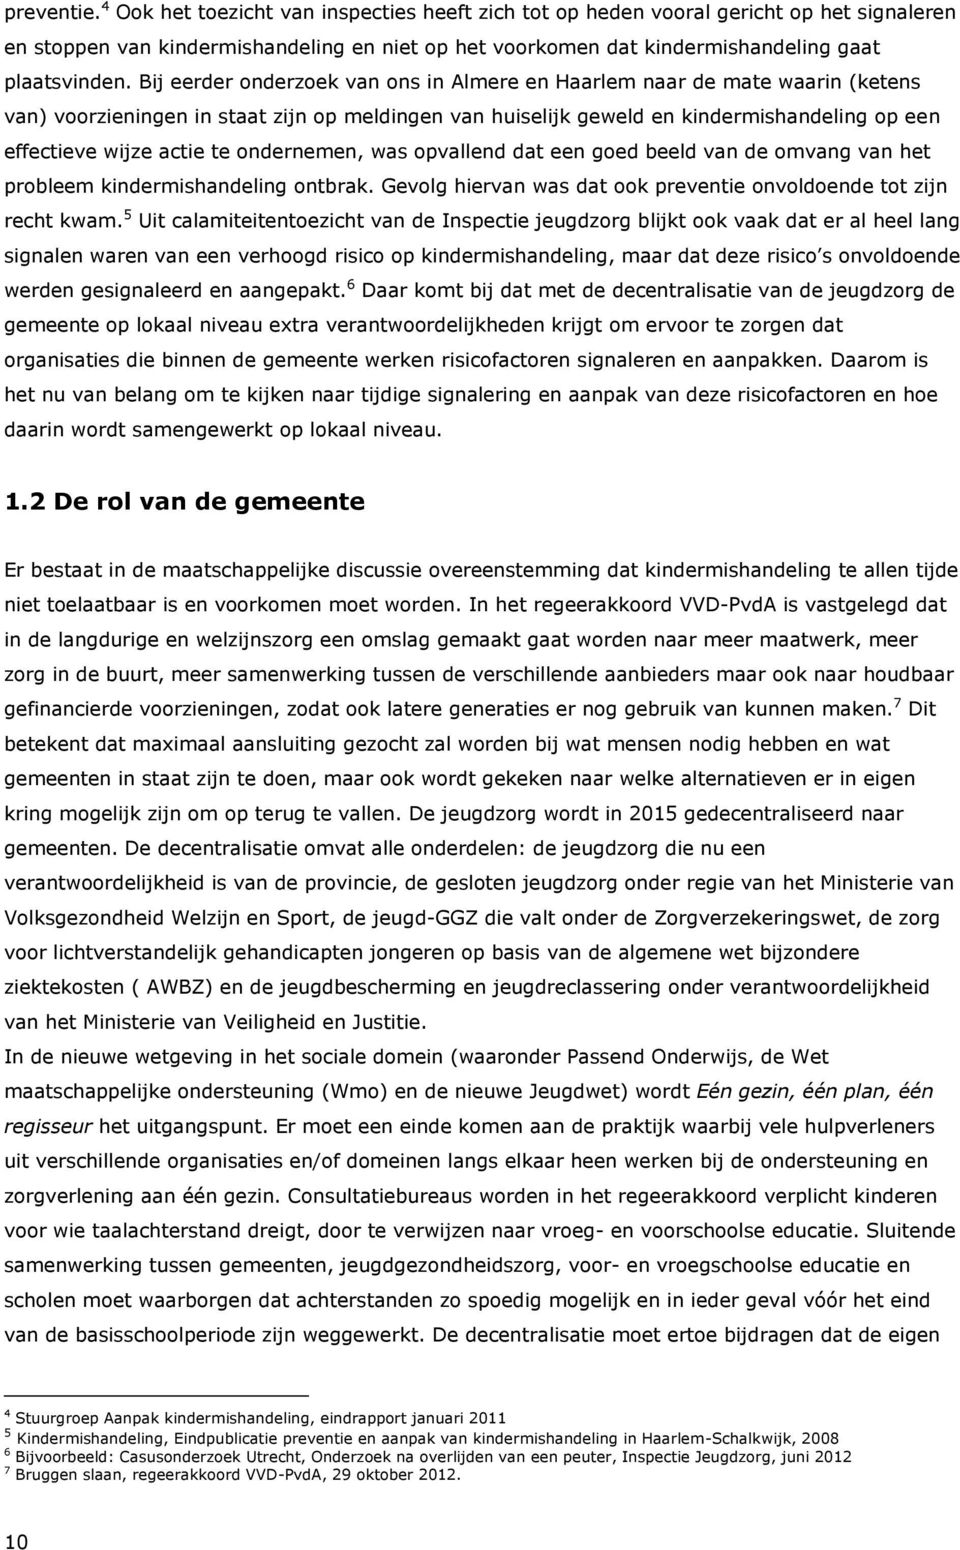 Bij eerder onderzoek van ons in Almere en Haarlem naar de mate waarin (ketens van) voorzieningen in staat zijn op meldingen van huiselijk geweld en kindermishandeling op een effectieve wijze actie te